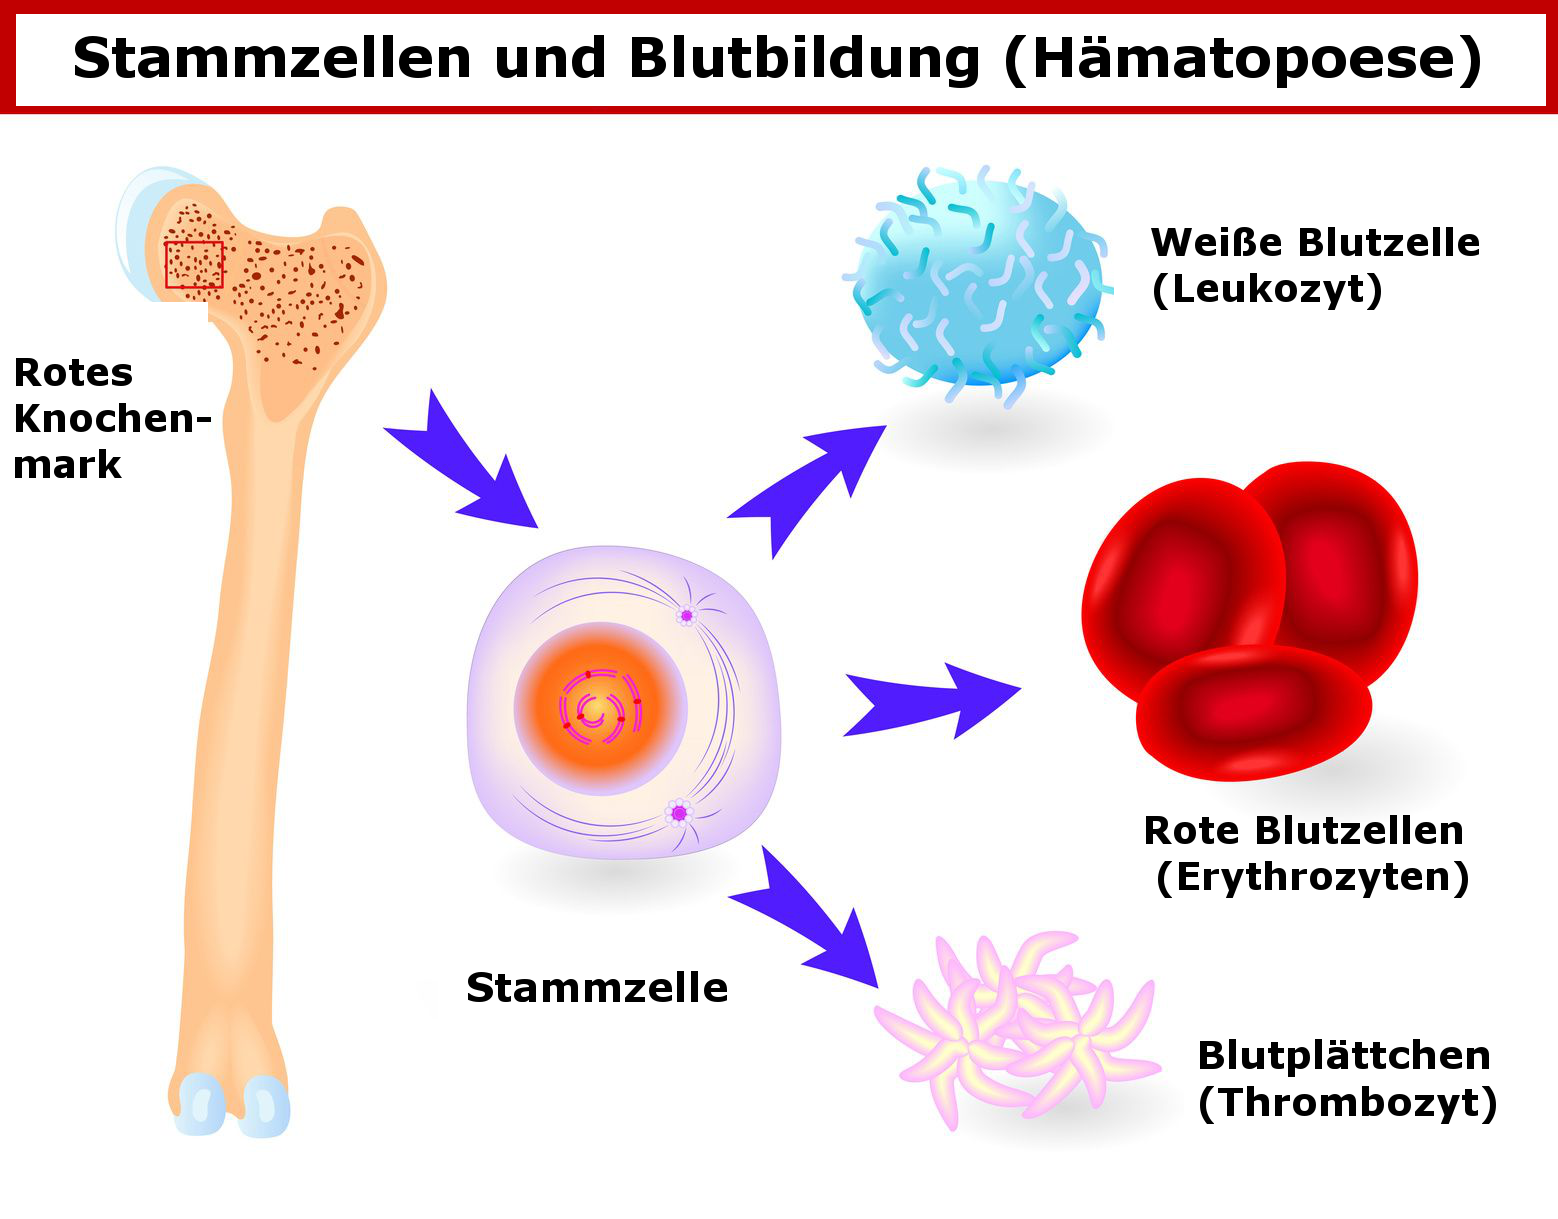 Knochenmark-SZ-BlutzellenschematischdeutscheBearbeitungFotolia_49738204_M_designua.png